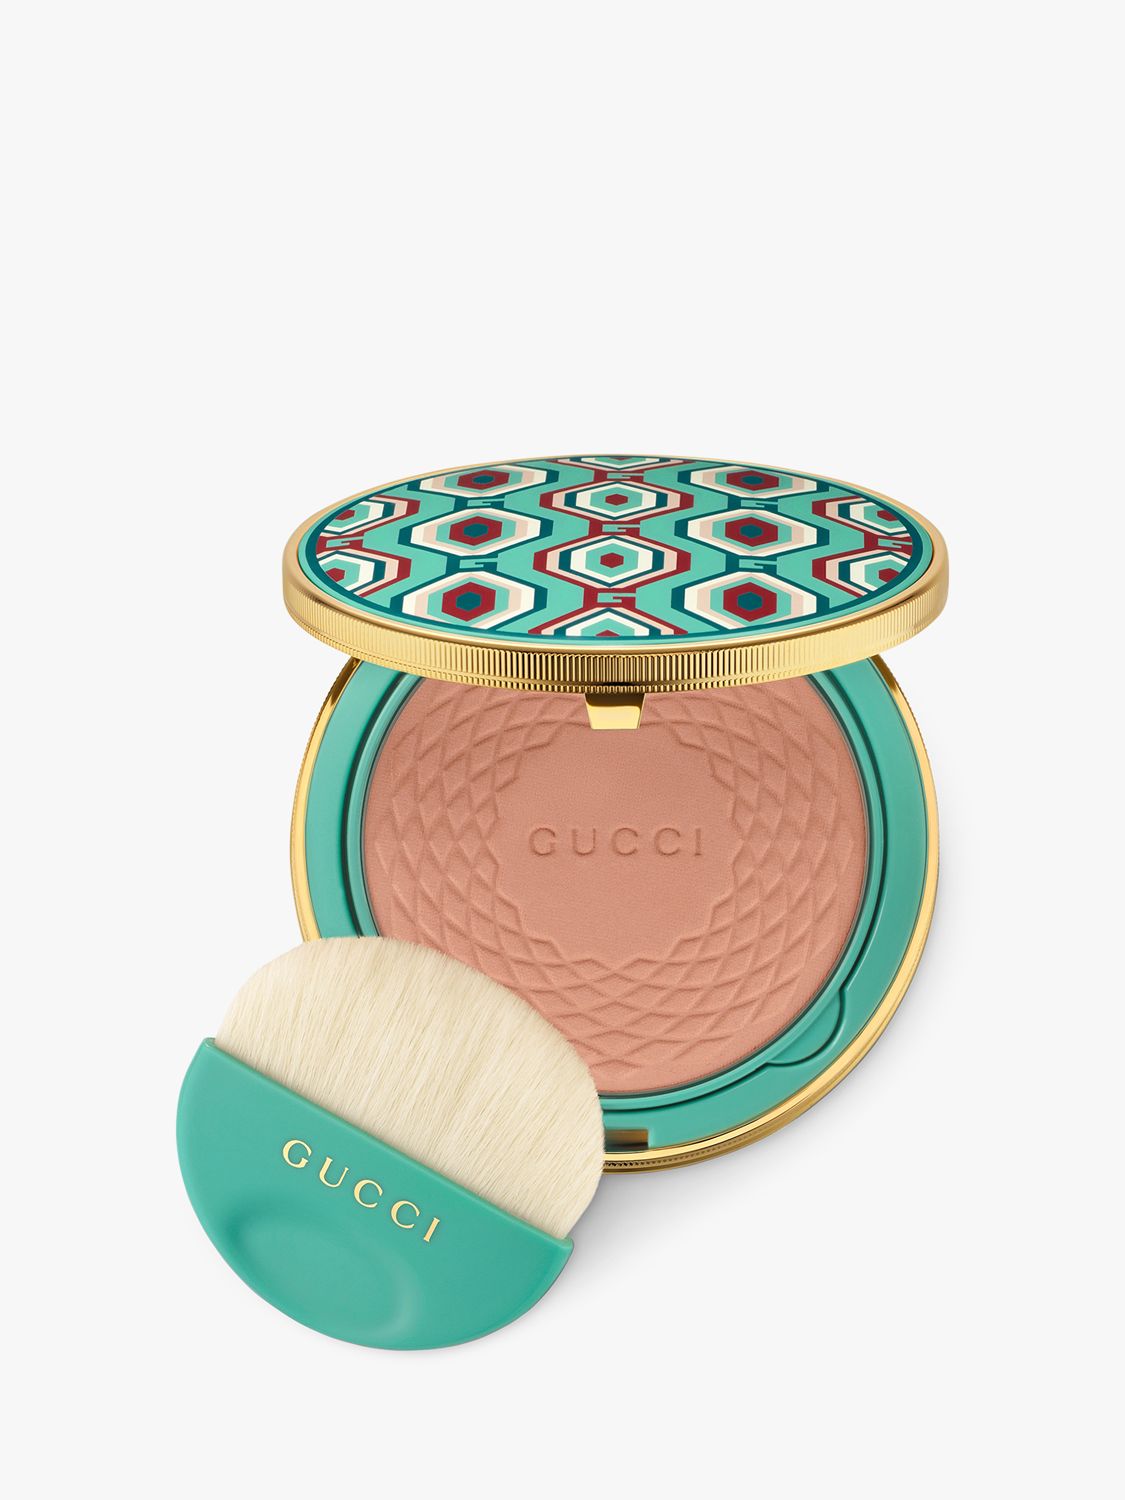 Gucci Poudre de Beauté Eclat Soleil Bronzing Powder Limited Edition, 01 1